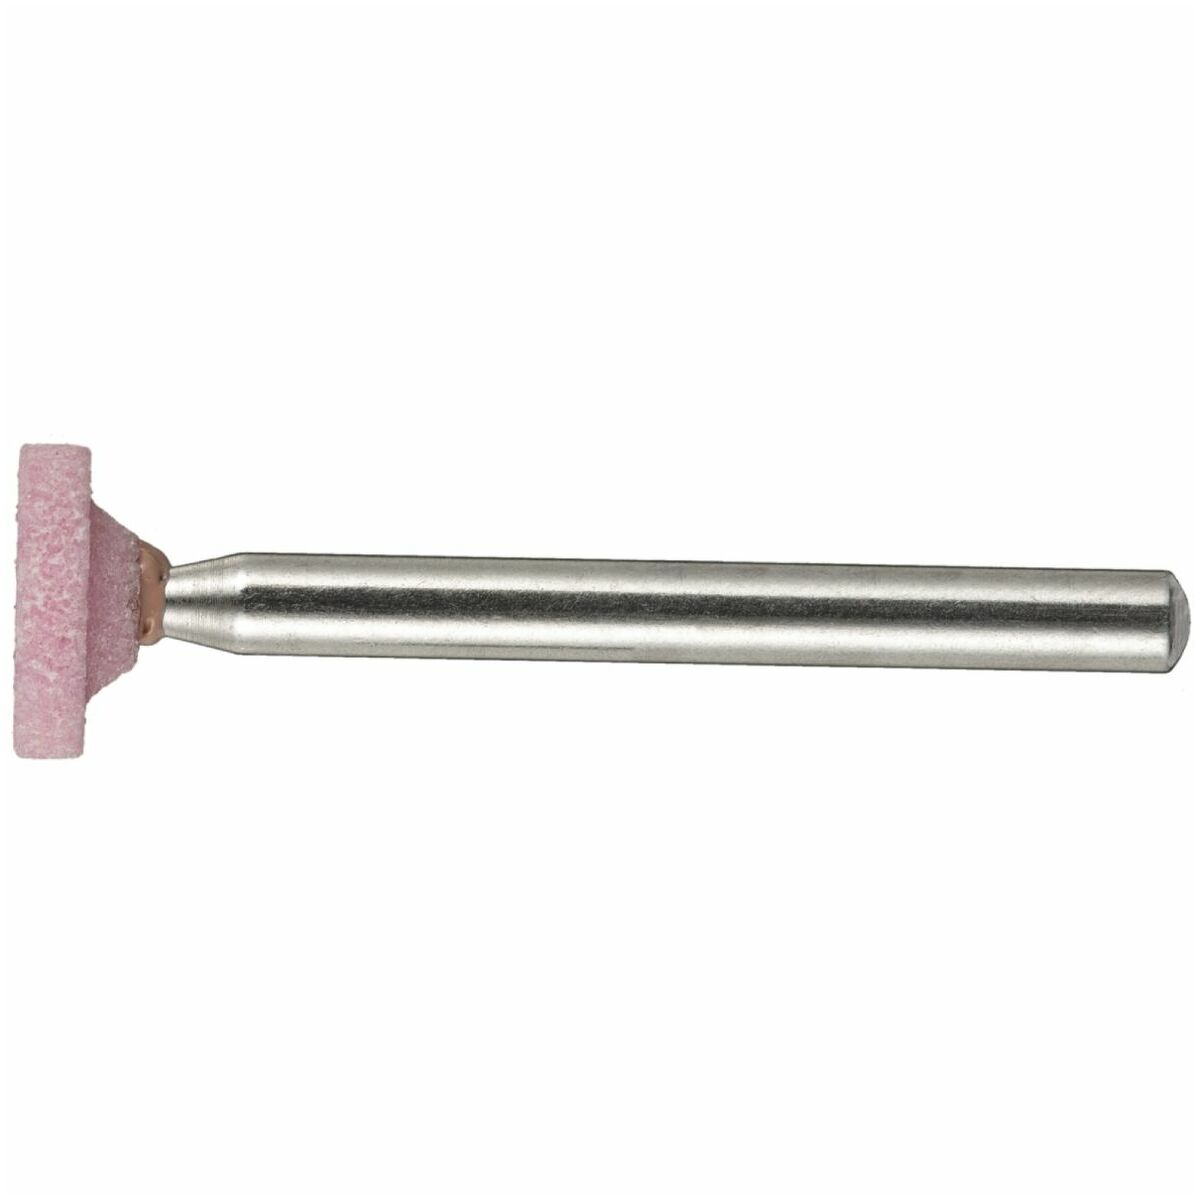 LUKAS Schleifstift D1 Zylinderform für Stahl/Stahlguss 9x2 mm Schaft 3 mm  Edelkorund Korn 100 einfach kaufen